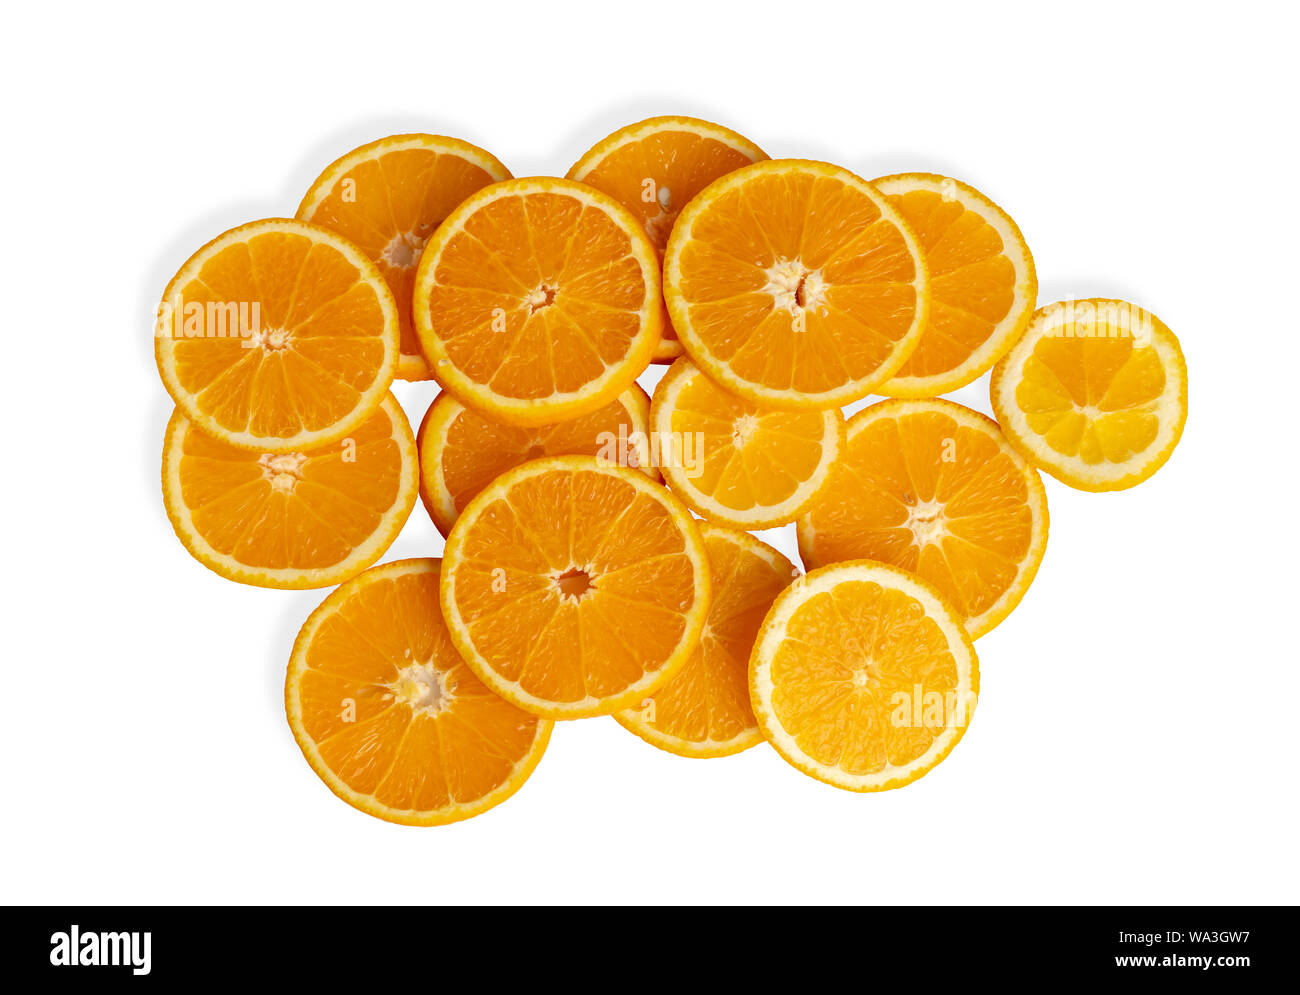 Frutas de naranja en la pieza aislada en los fondos blancos. El resultado es agridulce o dulce. Contiene calcio, potasio, vitamina A y C. Foto de stock